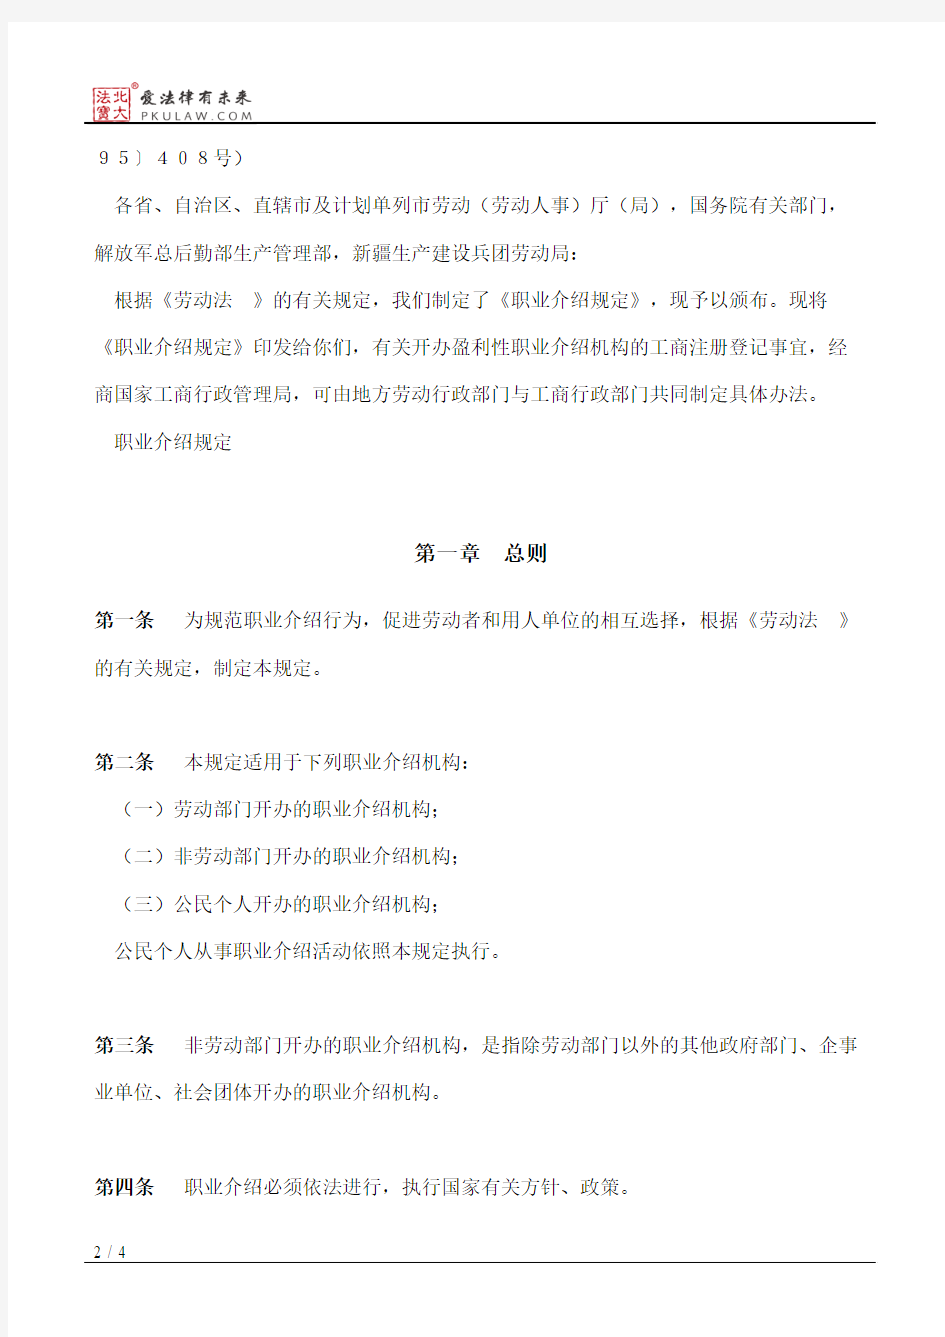 北京市劳动局关于印发《北京市实施〈职业介绍规定〉办法》的通知